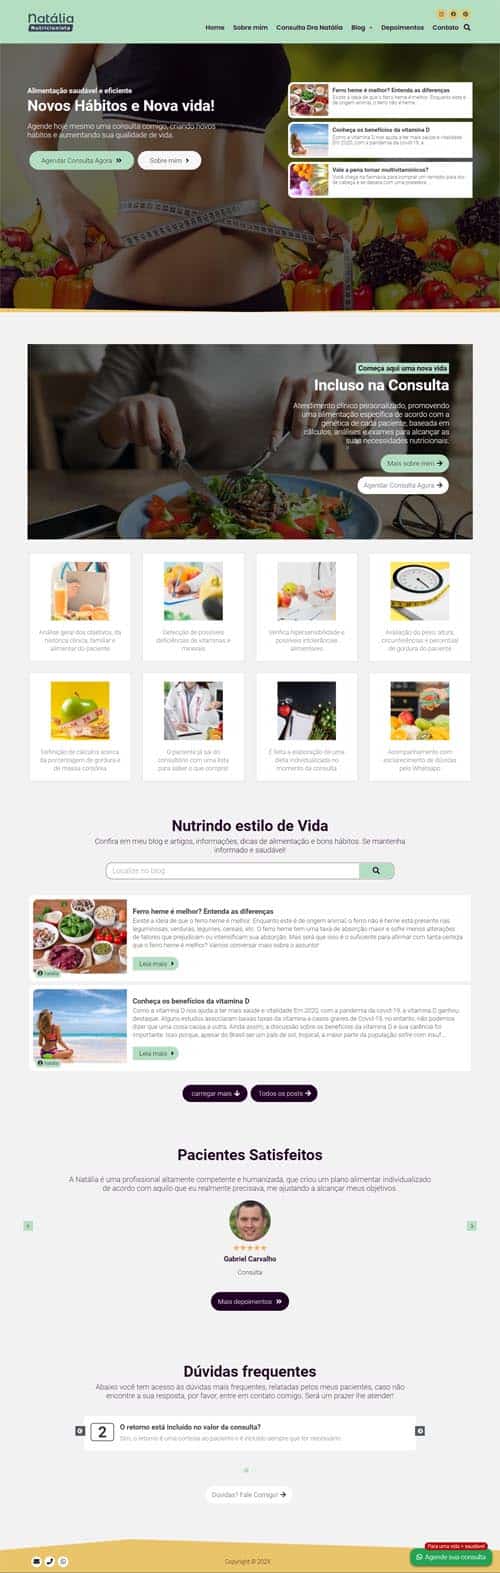 Modelo de site para Nutricionistas e Clínica ou Consultório de Nutrição